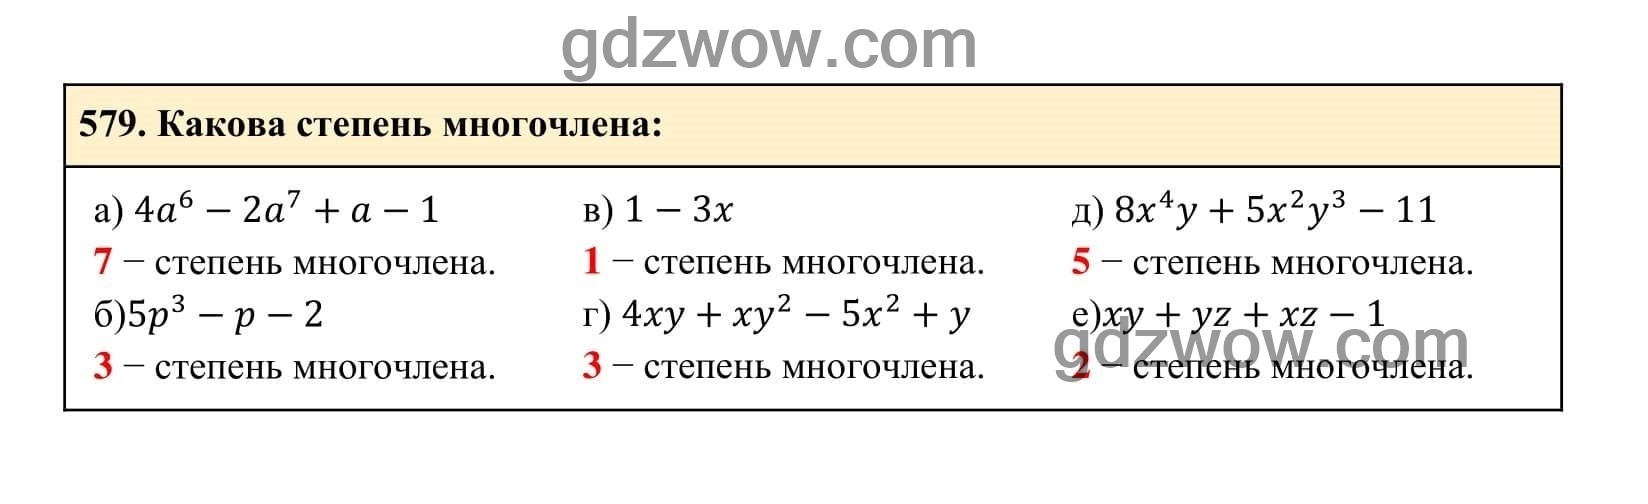 Упражнение 579 - ГДЗ по Алгебре 7 класс Учебник Макарычев (решебник) - GDZwow